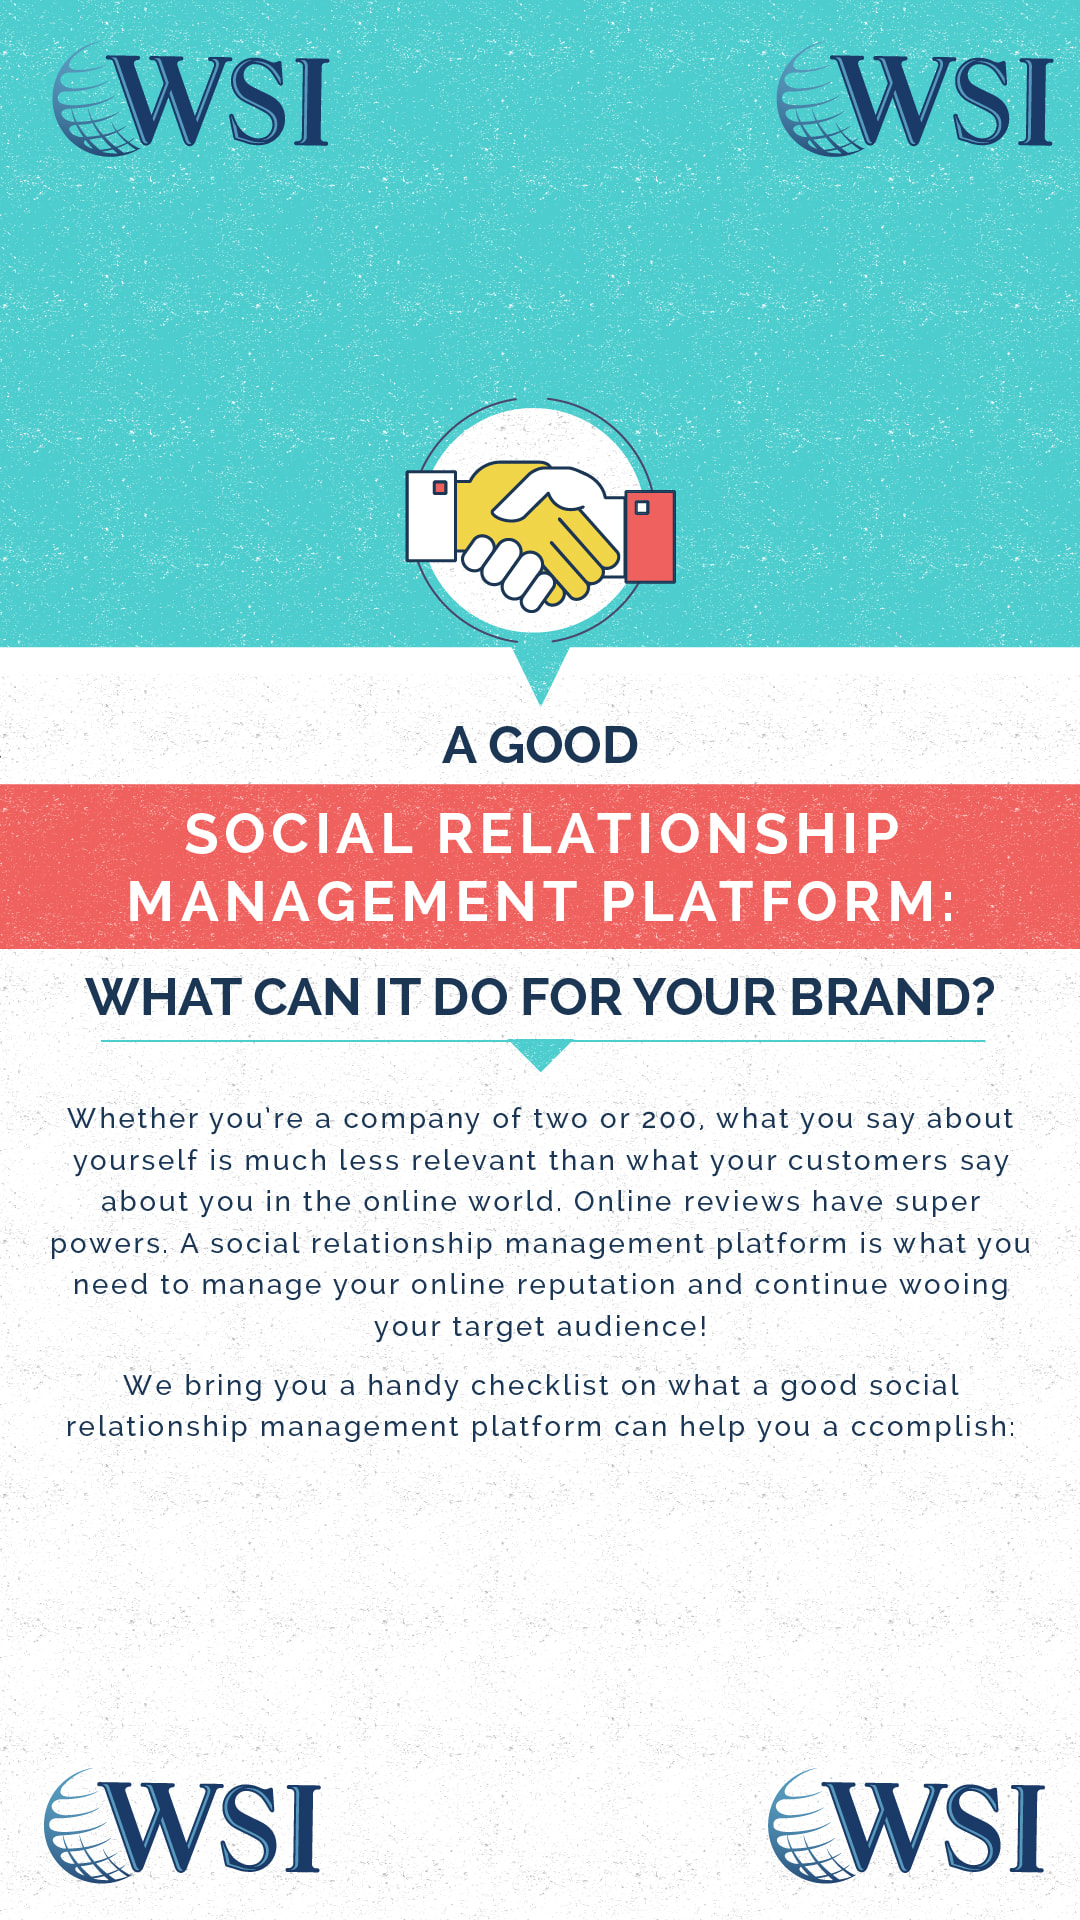 Social relationship management platform